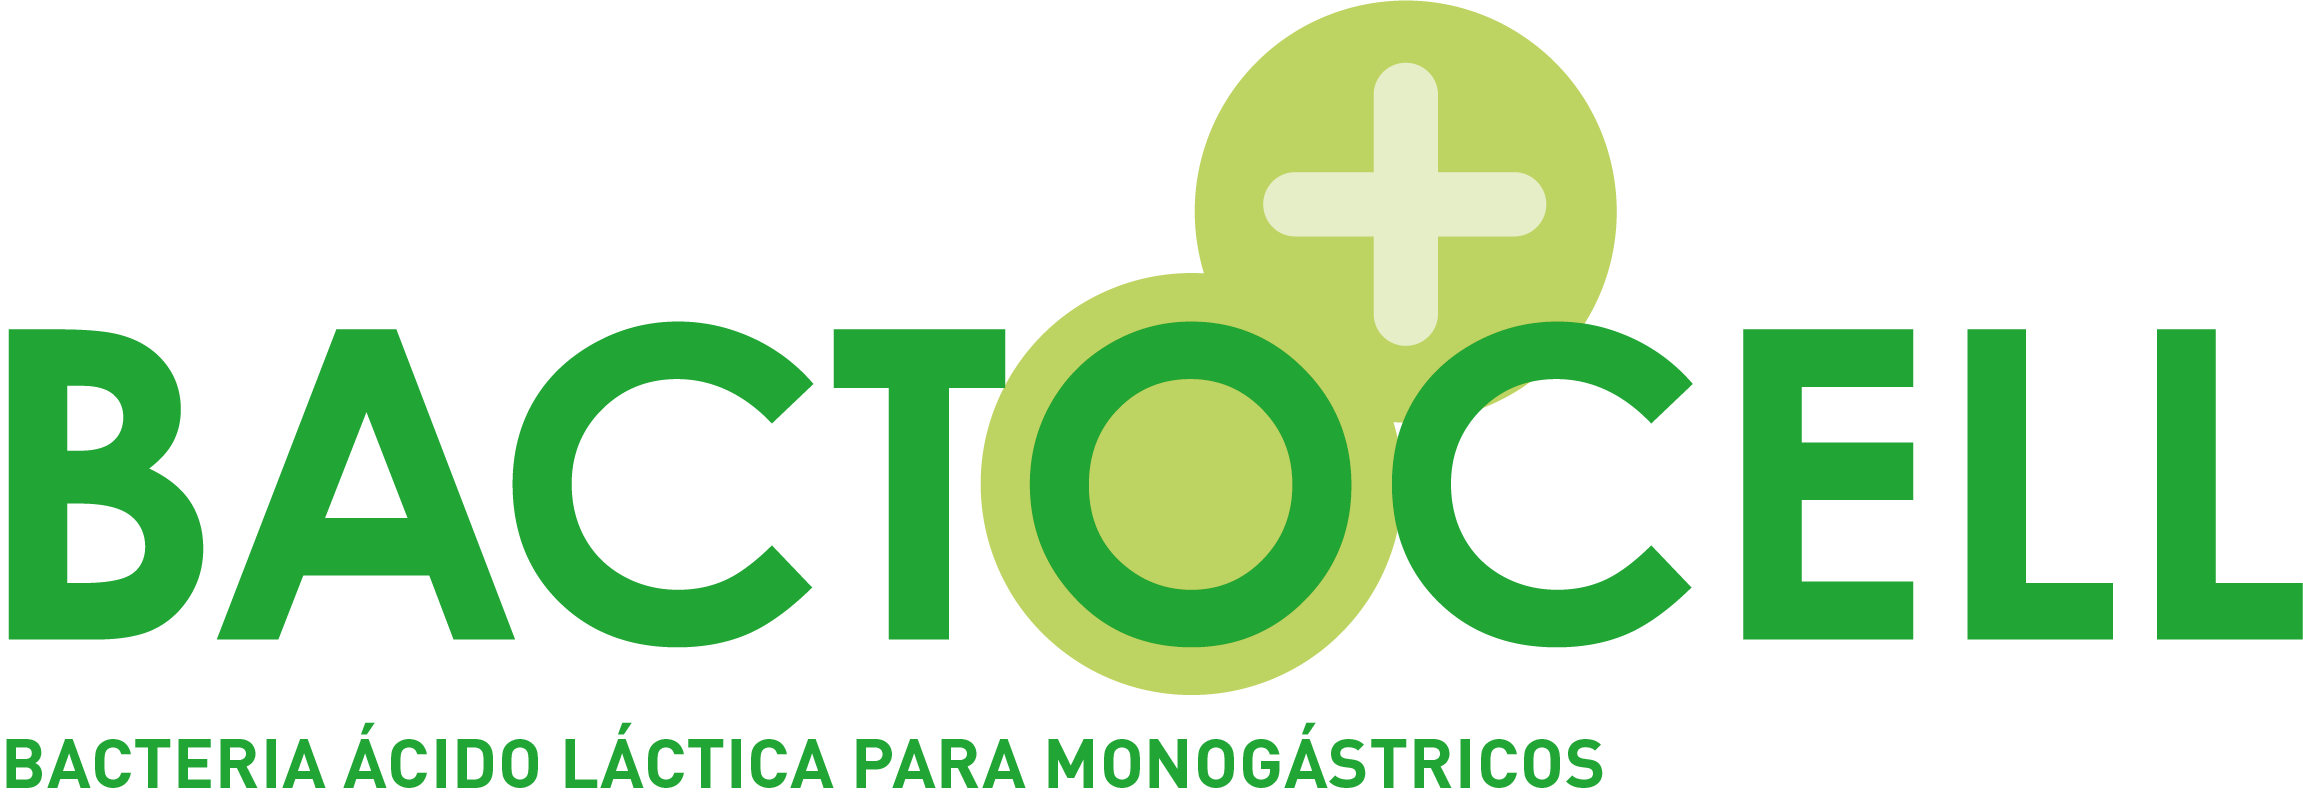 Bacteria probiótica ácido-láctica para monogástricos: BACTOCELL 